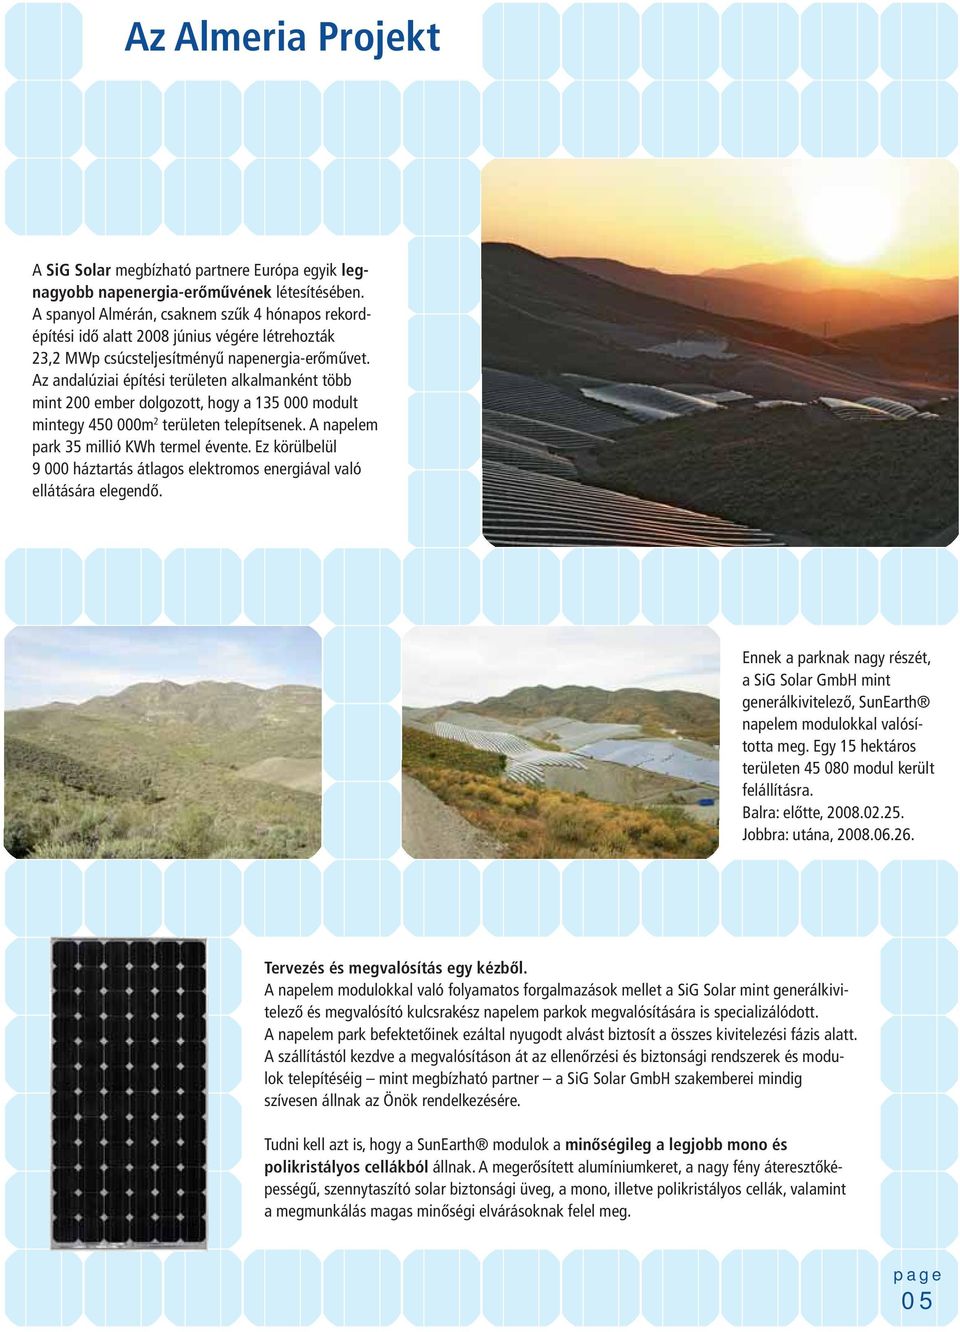 Az andalúziai építési területen alkalmanként több mint 200 ember dolgozott, hogy a 135 000 modult mintegy 450 000m 2 területen telepítsenek. A napelem park 35 millió KWh termel évente.